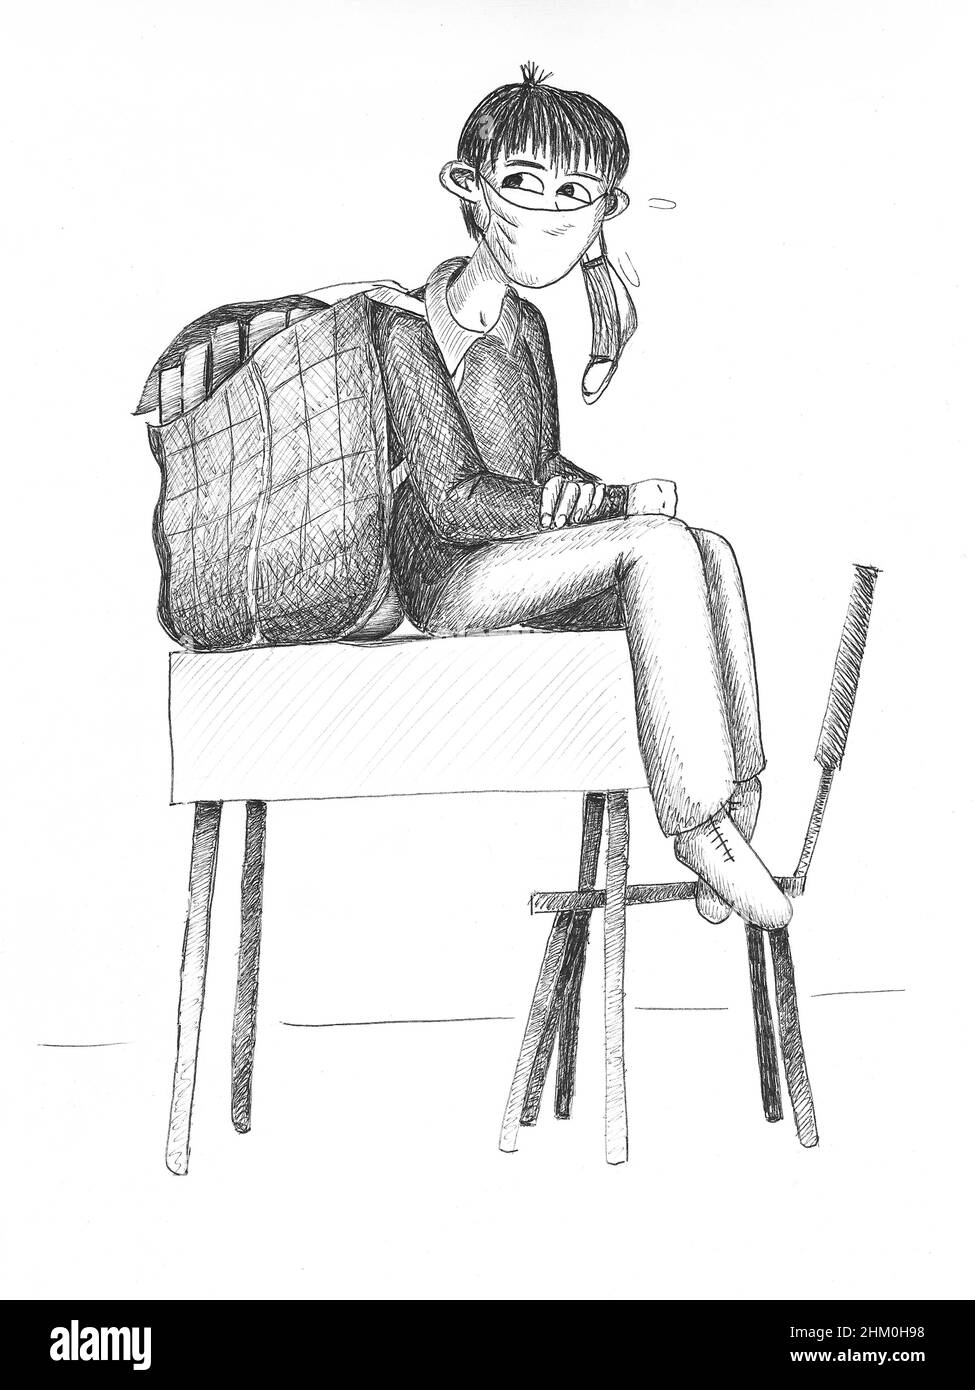 Étudiant portant un énorme sac à dos, assis sur une table. Illustration. Banque D'Images